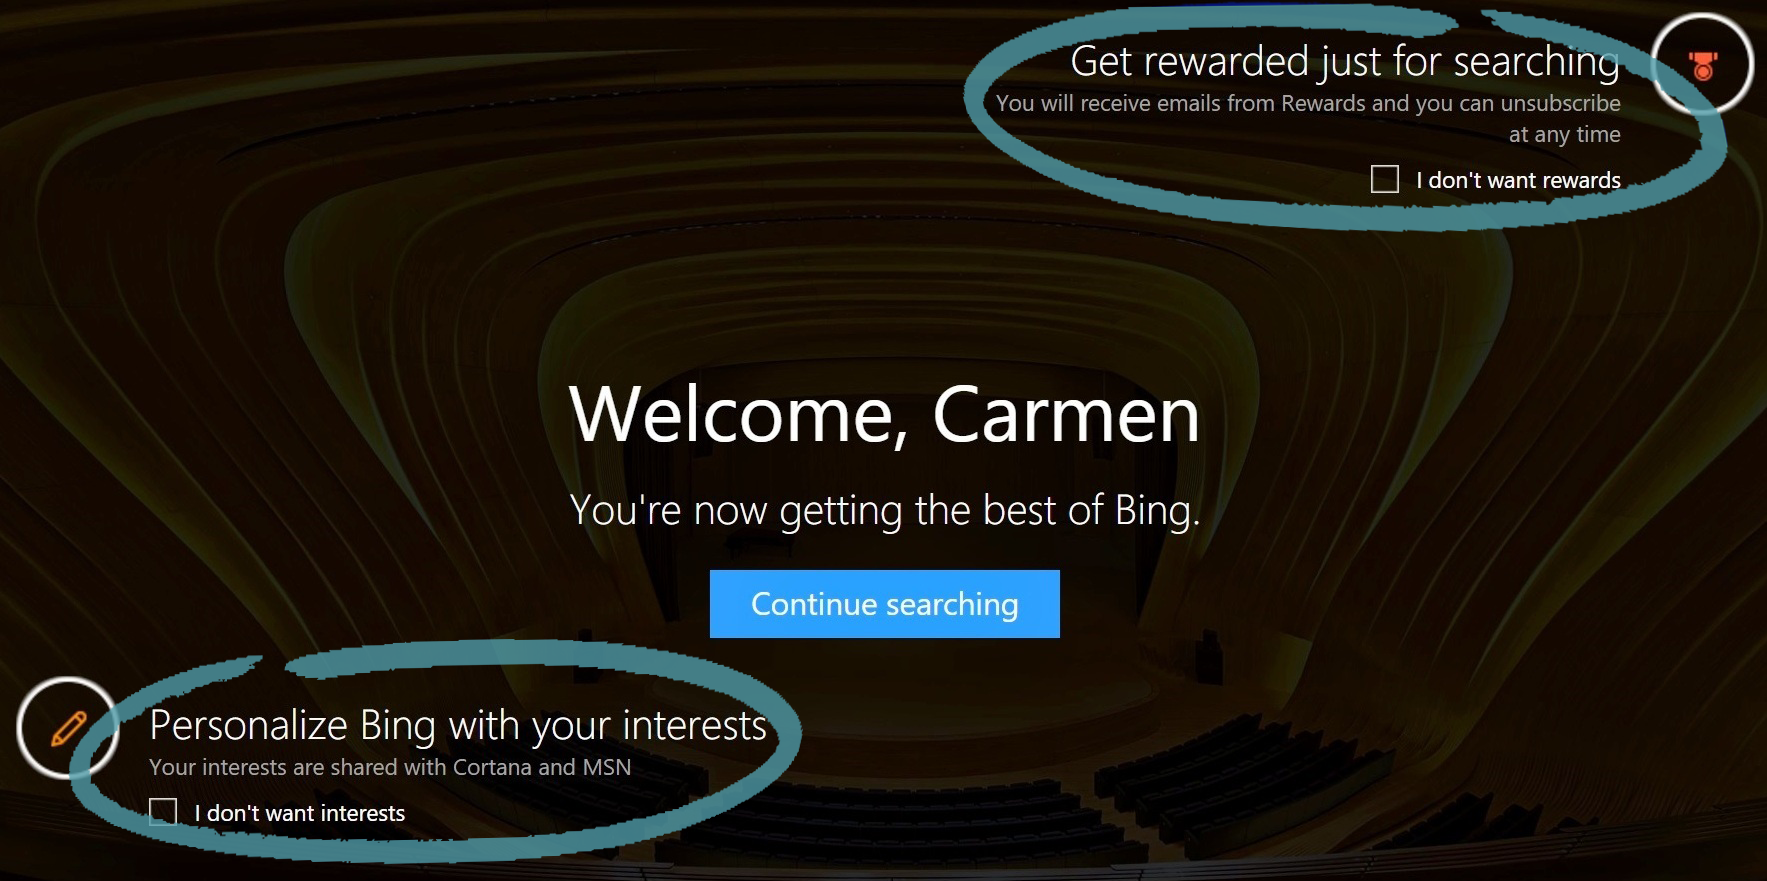 Домашняя страница Bing с вариантами явного согласия на интересы или вознаграждения